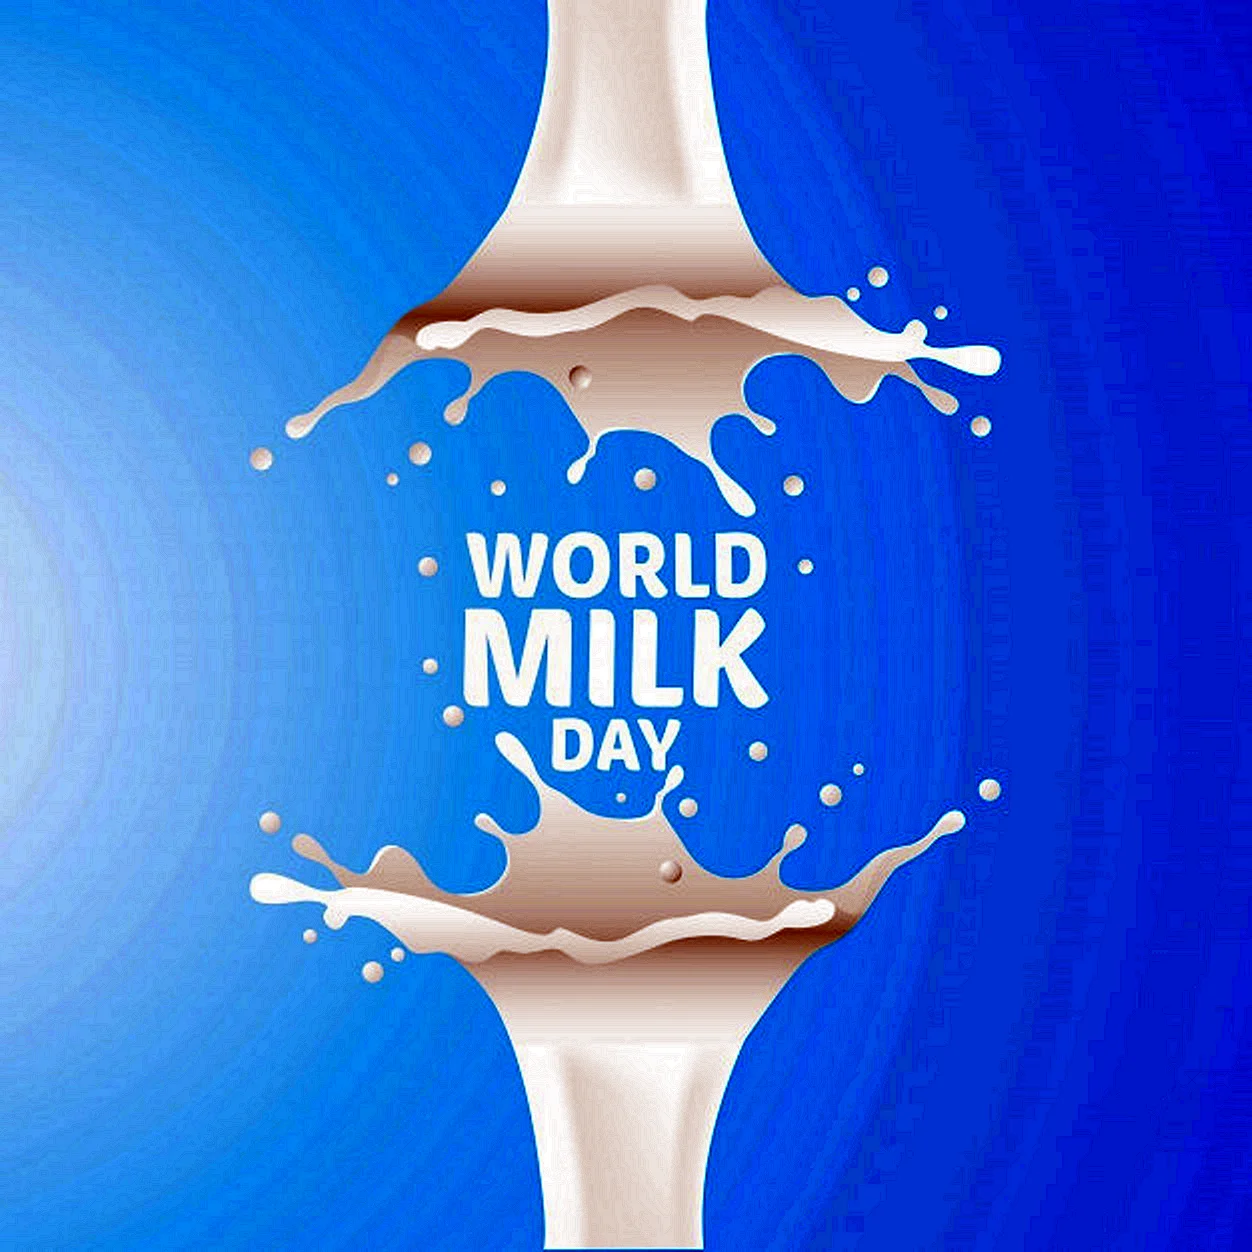 Всемирный день молока